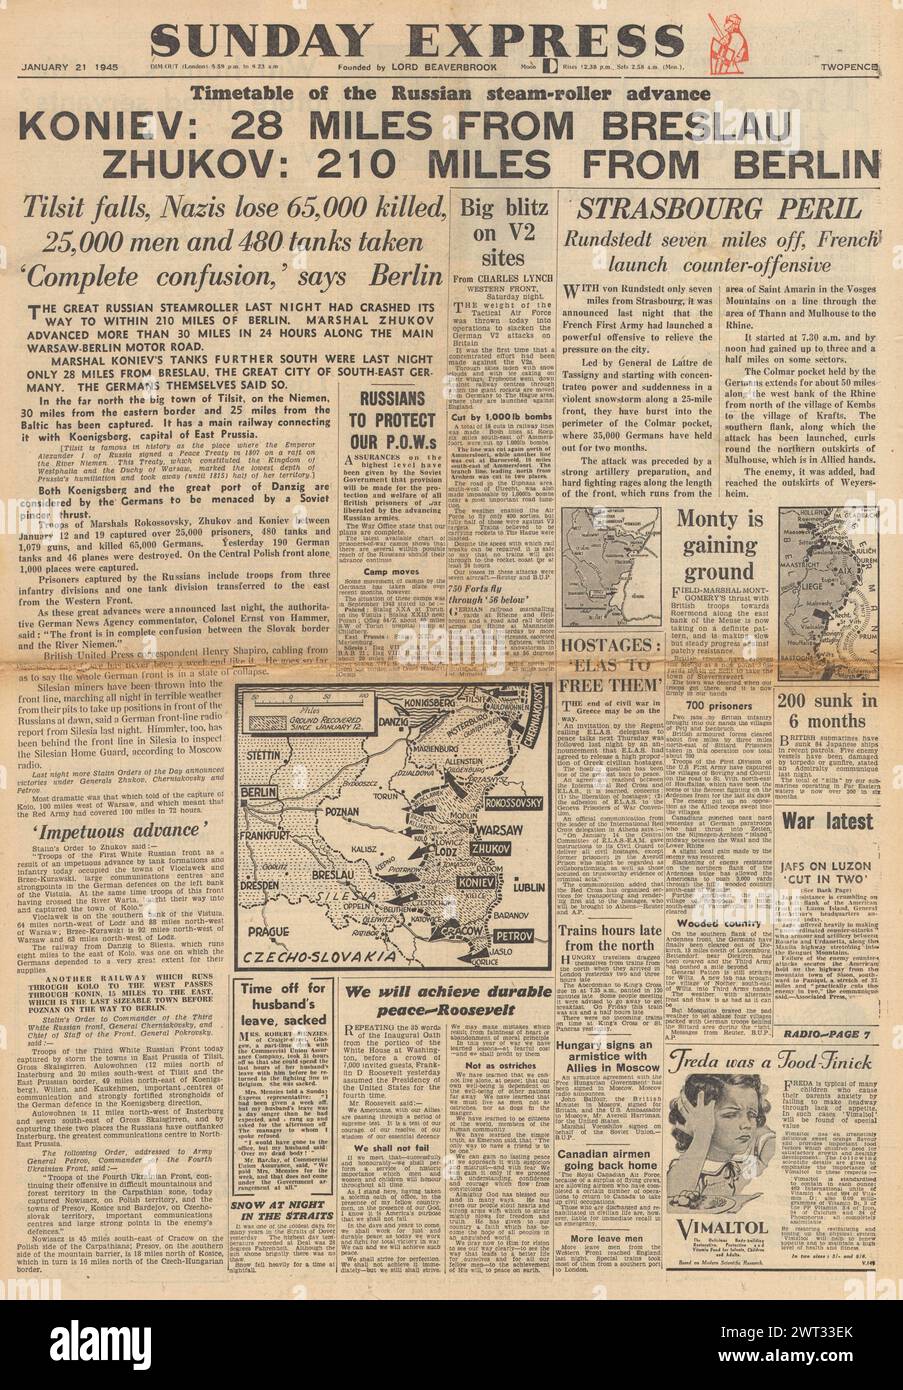 1945 la prima pagina del Sunday Express riporta che l'Armata Rossa si reca in Germania e le forze tedesche minacciano Strasburgo Foto Stock